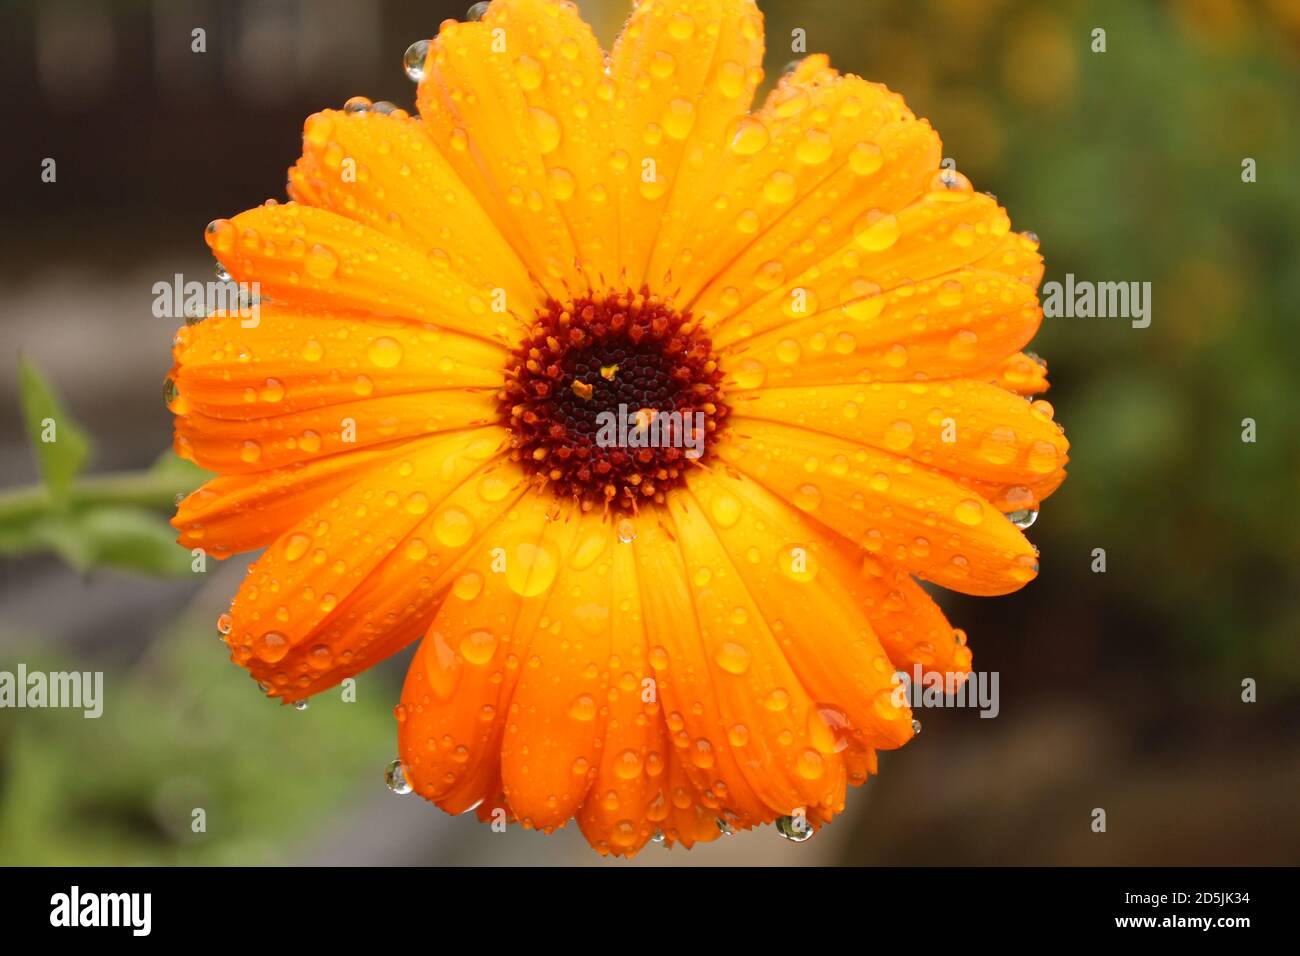 Gros plan d'une tête de fleur marigold avec gouttes de pluie sur les pétales Banque D'Images